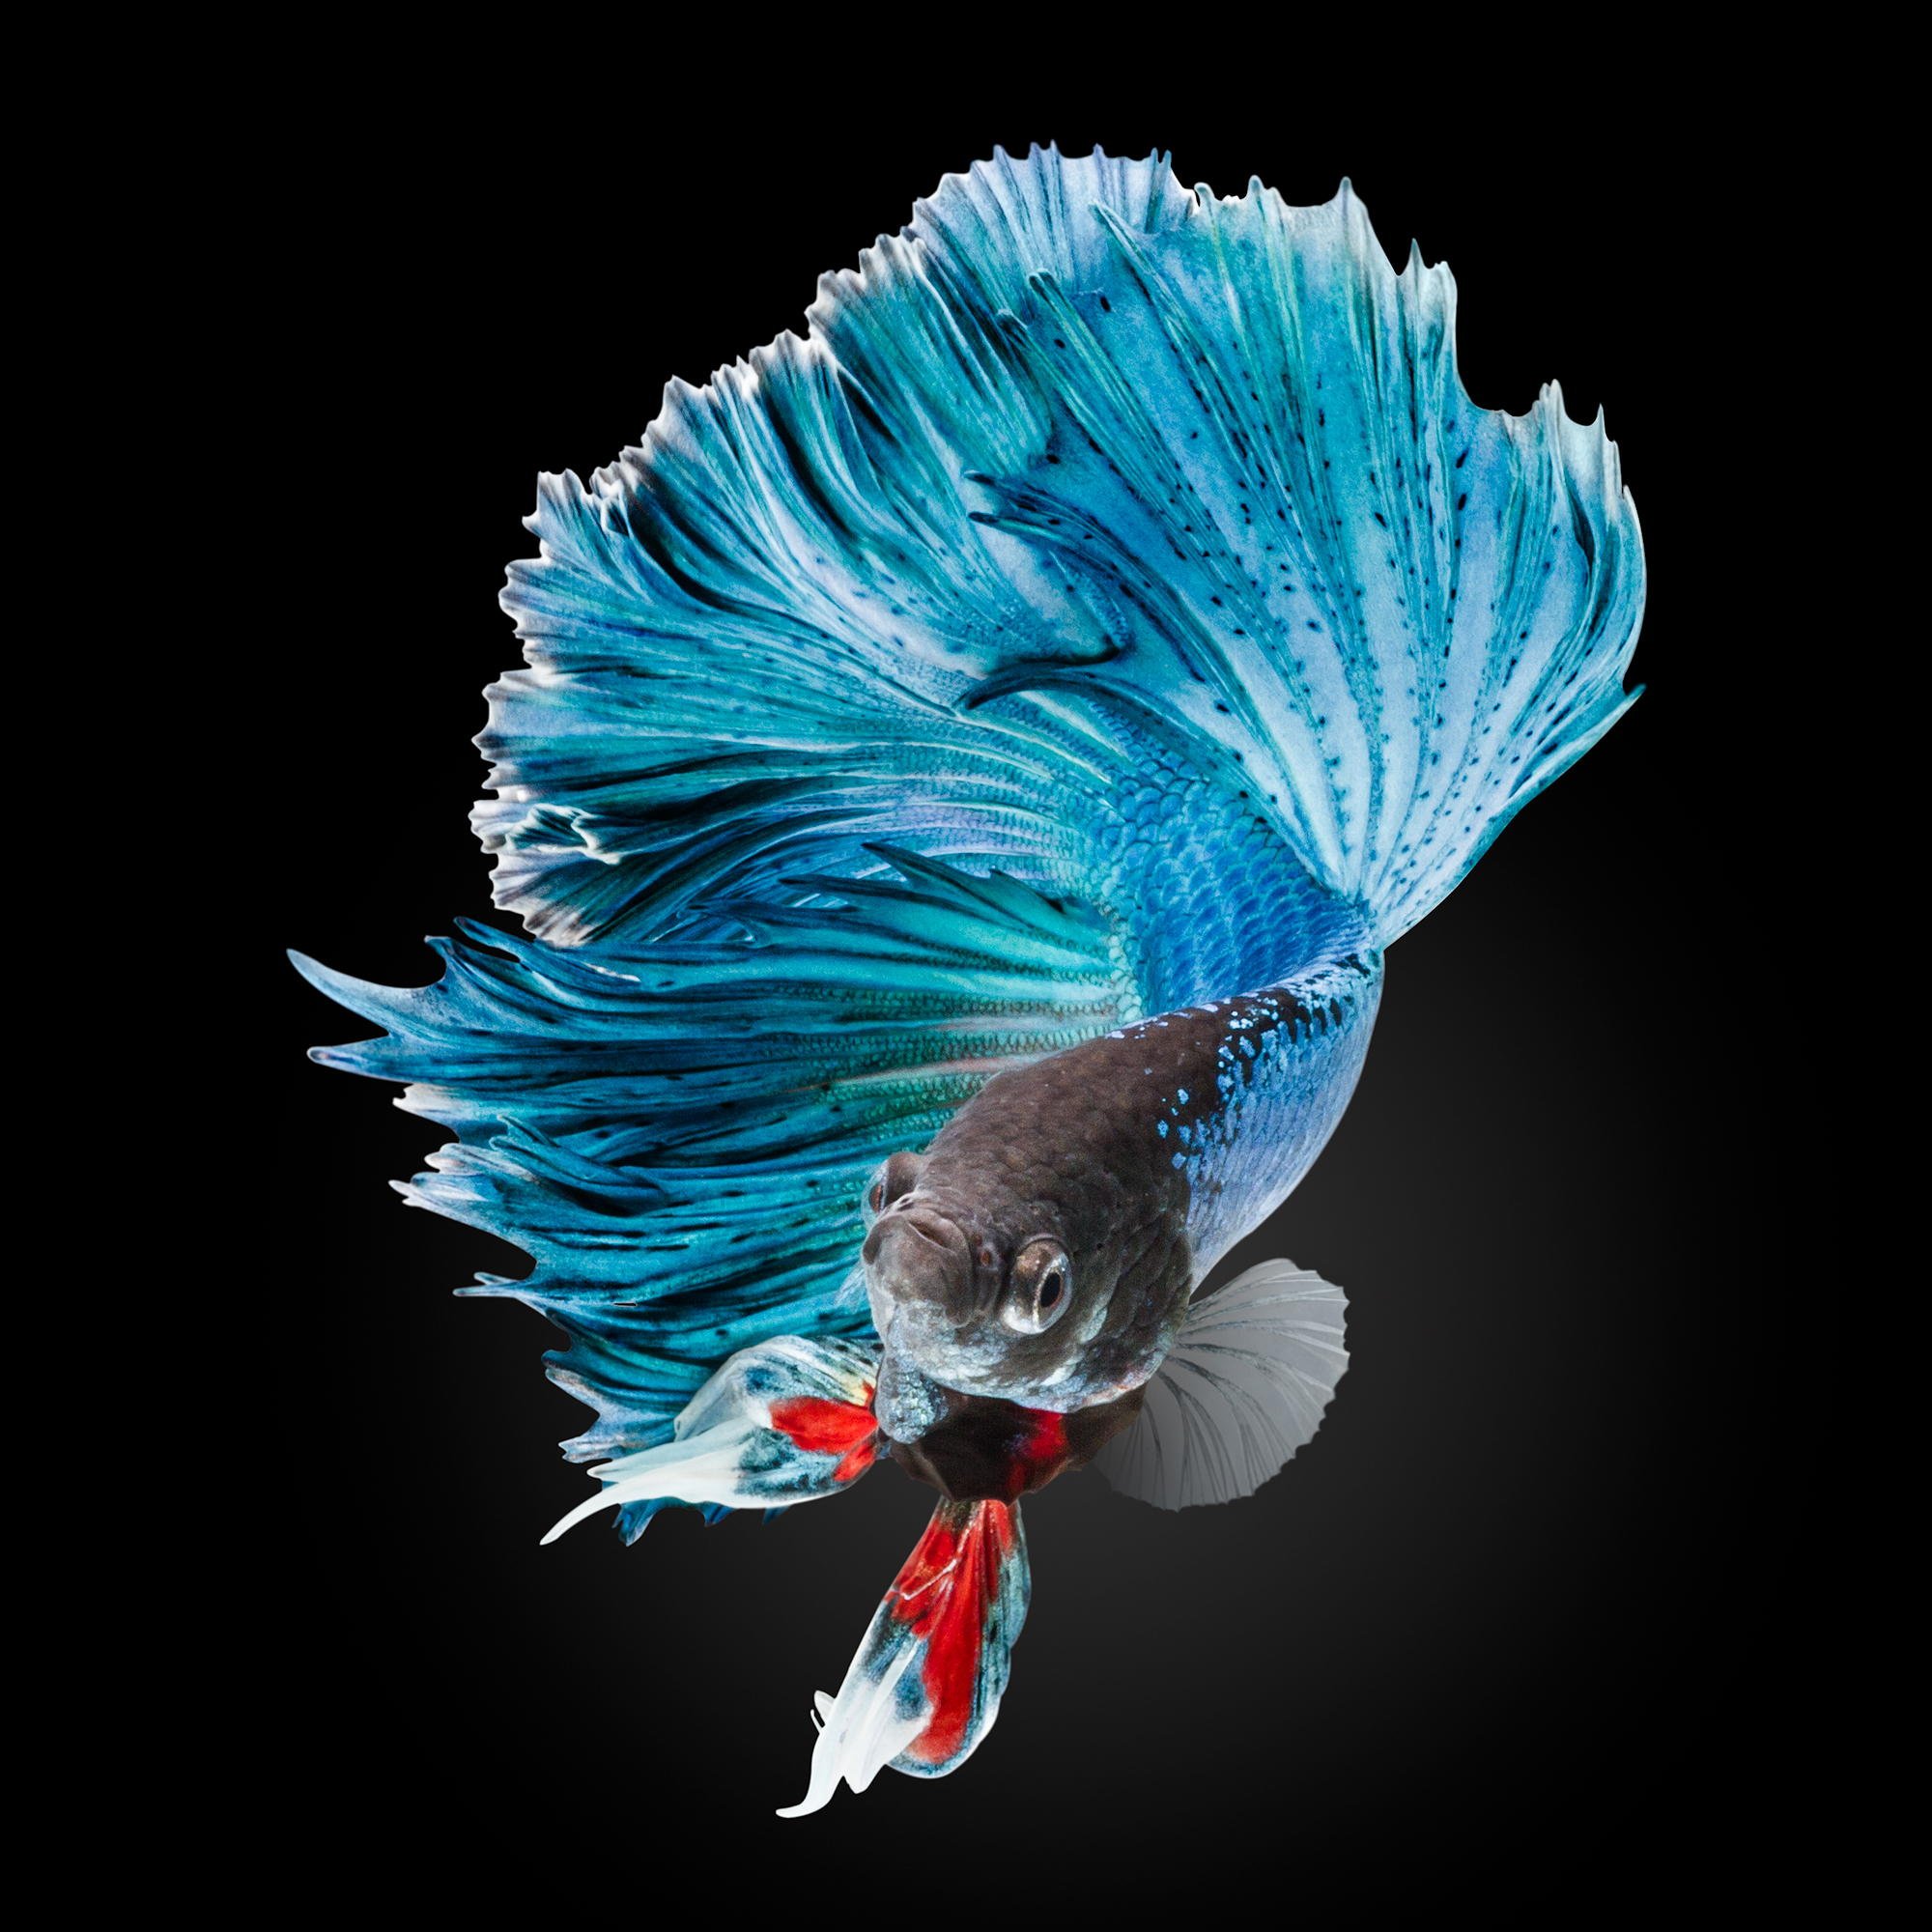 fondos de pantalla de peces luchadores siameses,azul,turquesa,pluma,turquesa,ala